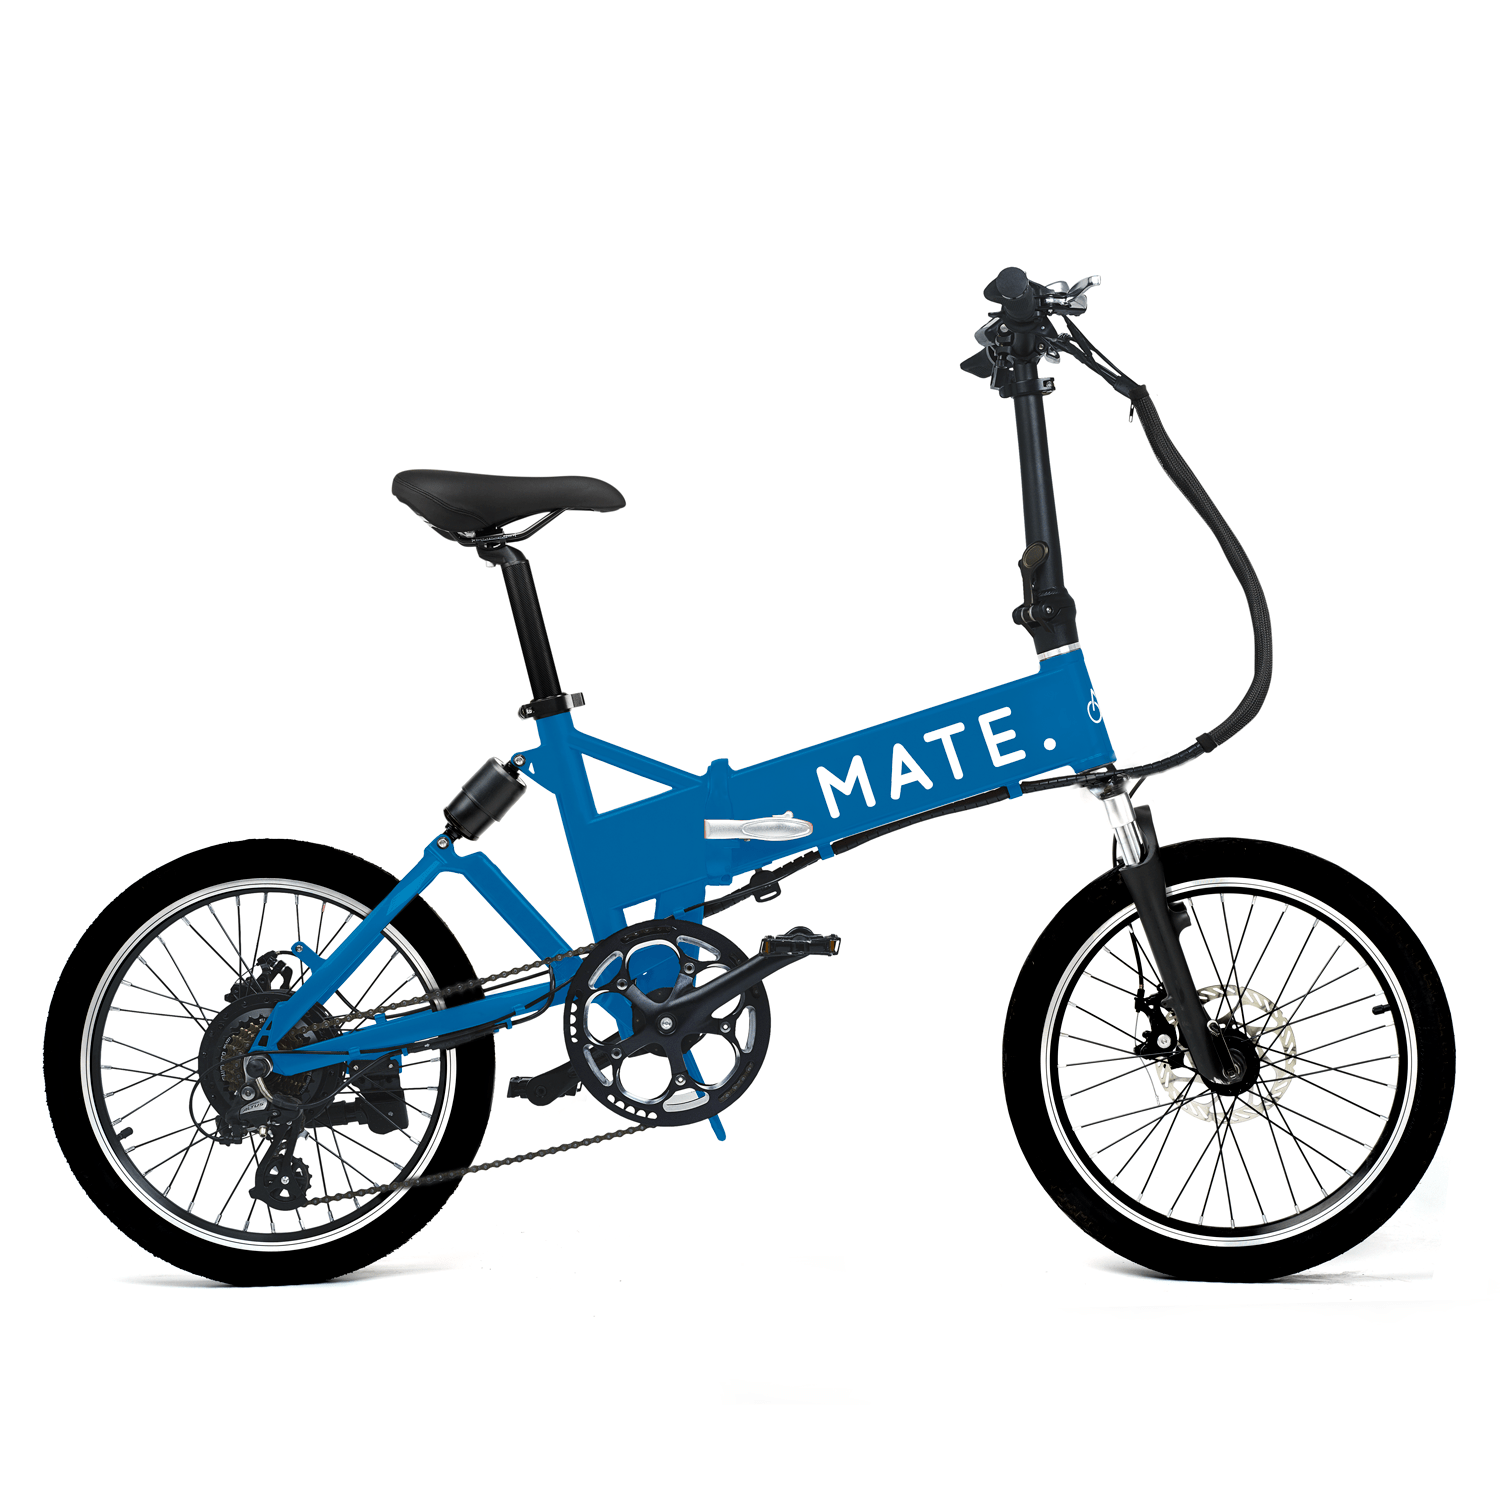 Overweeg zeker de Mate e-bikes bij de aanschaf van een elektrische fiets